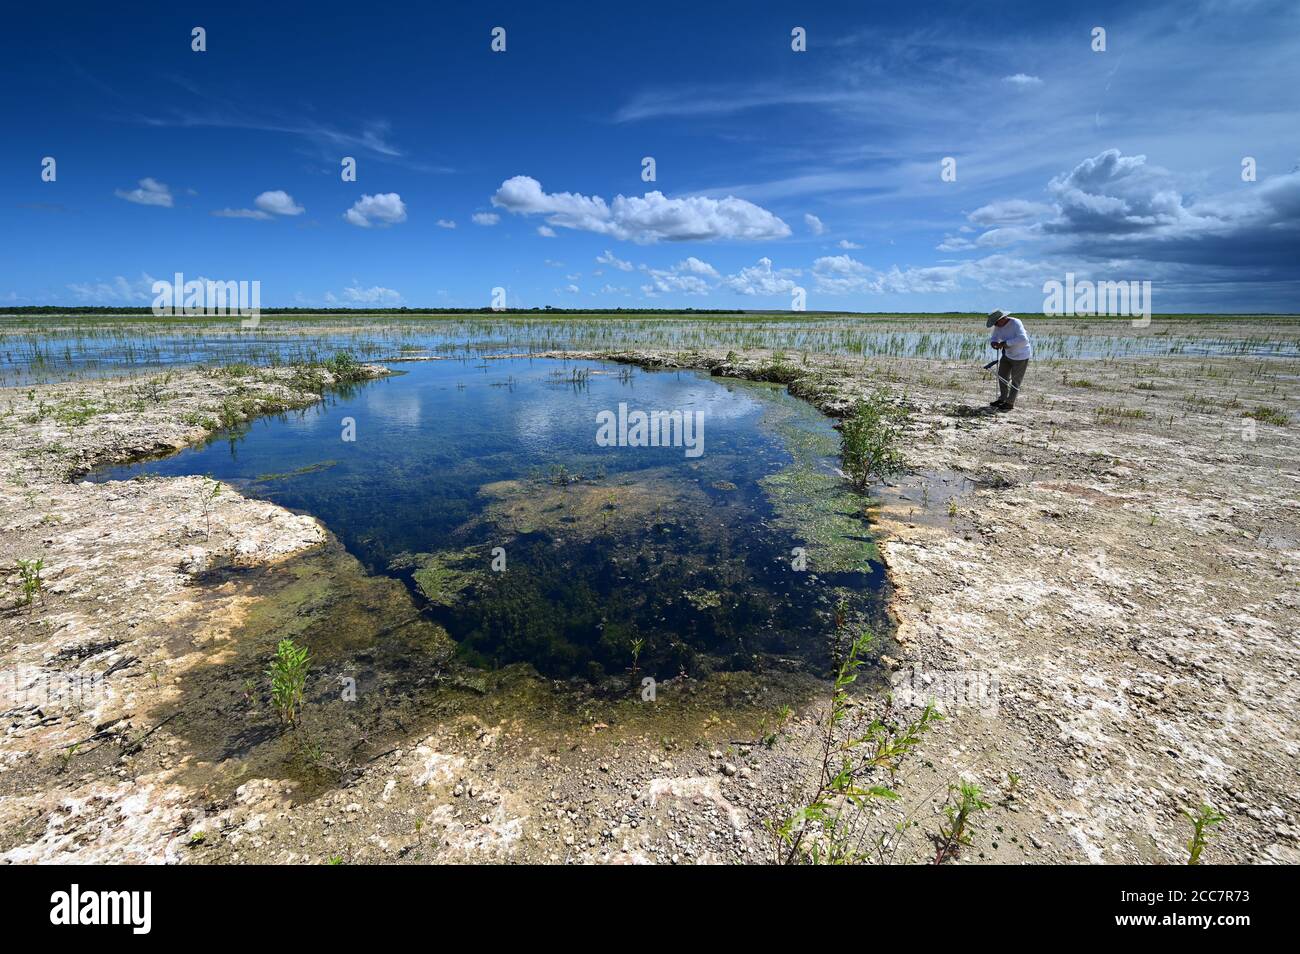 Active Senior erkundet und fotografiert Landschaft von Hole-in-the-Donut Lebensraumrestaurierungsgebiet des Everglades National Park, Florida. Stockfoto